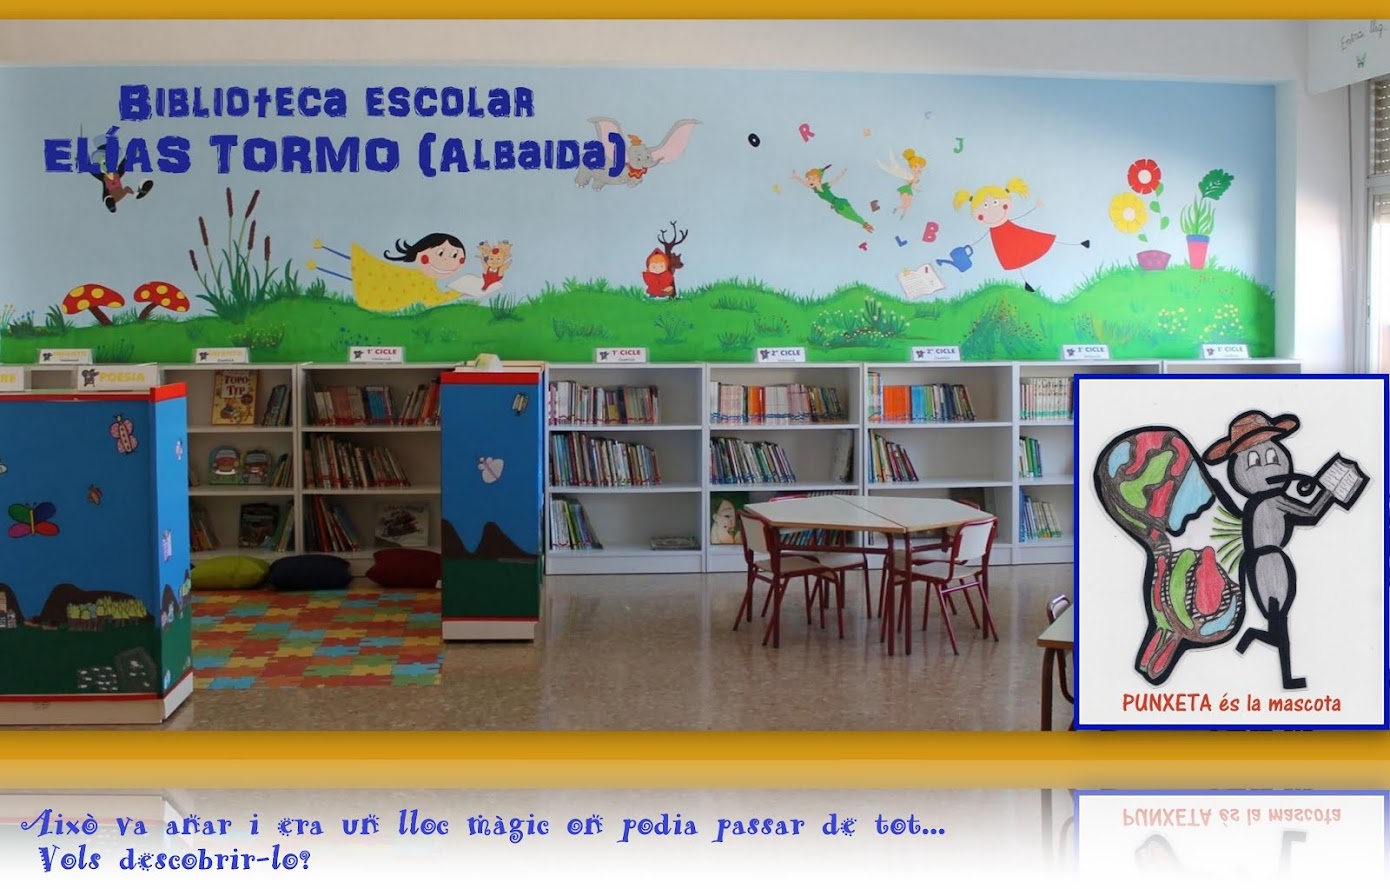 Biblioteca escolar Elías Tormo Albaida, la biblioteca de PUNXETA